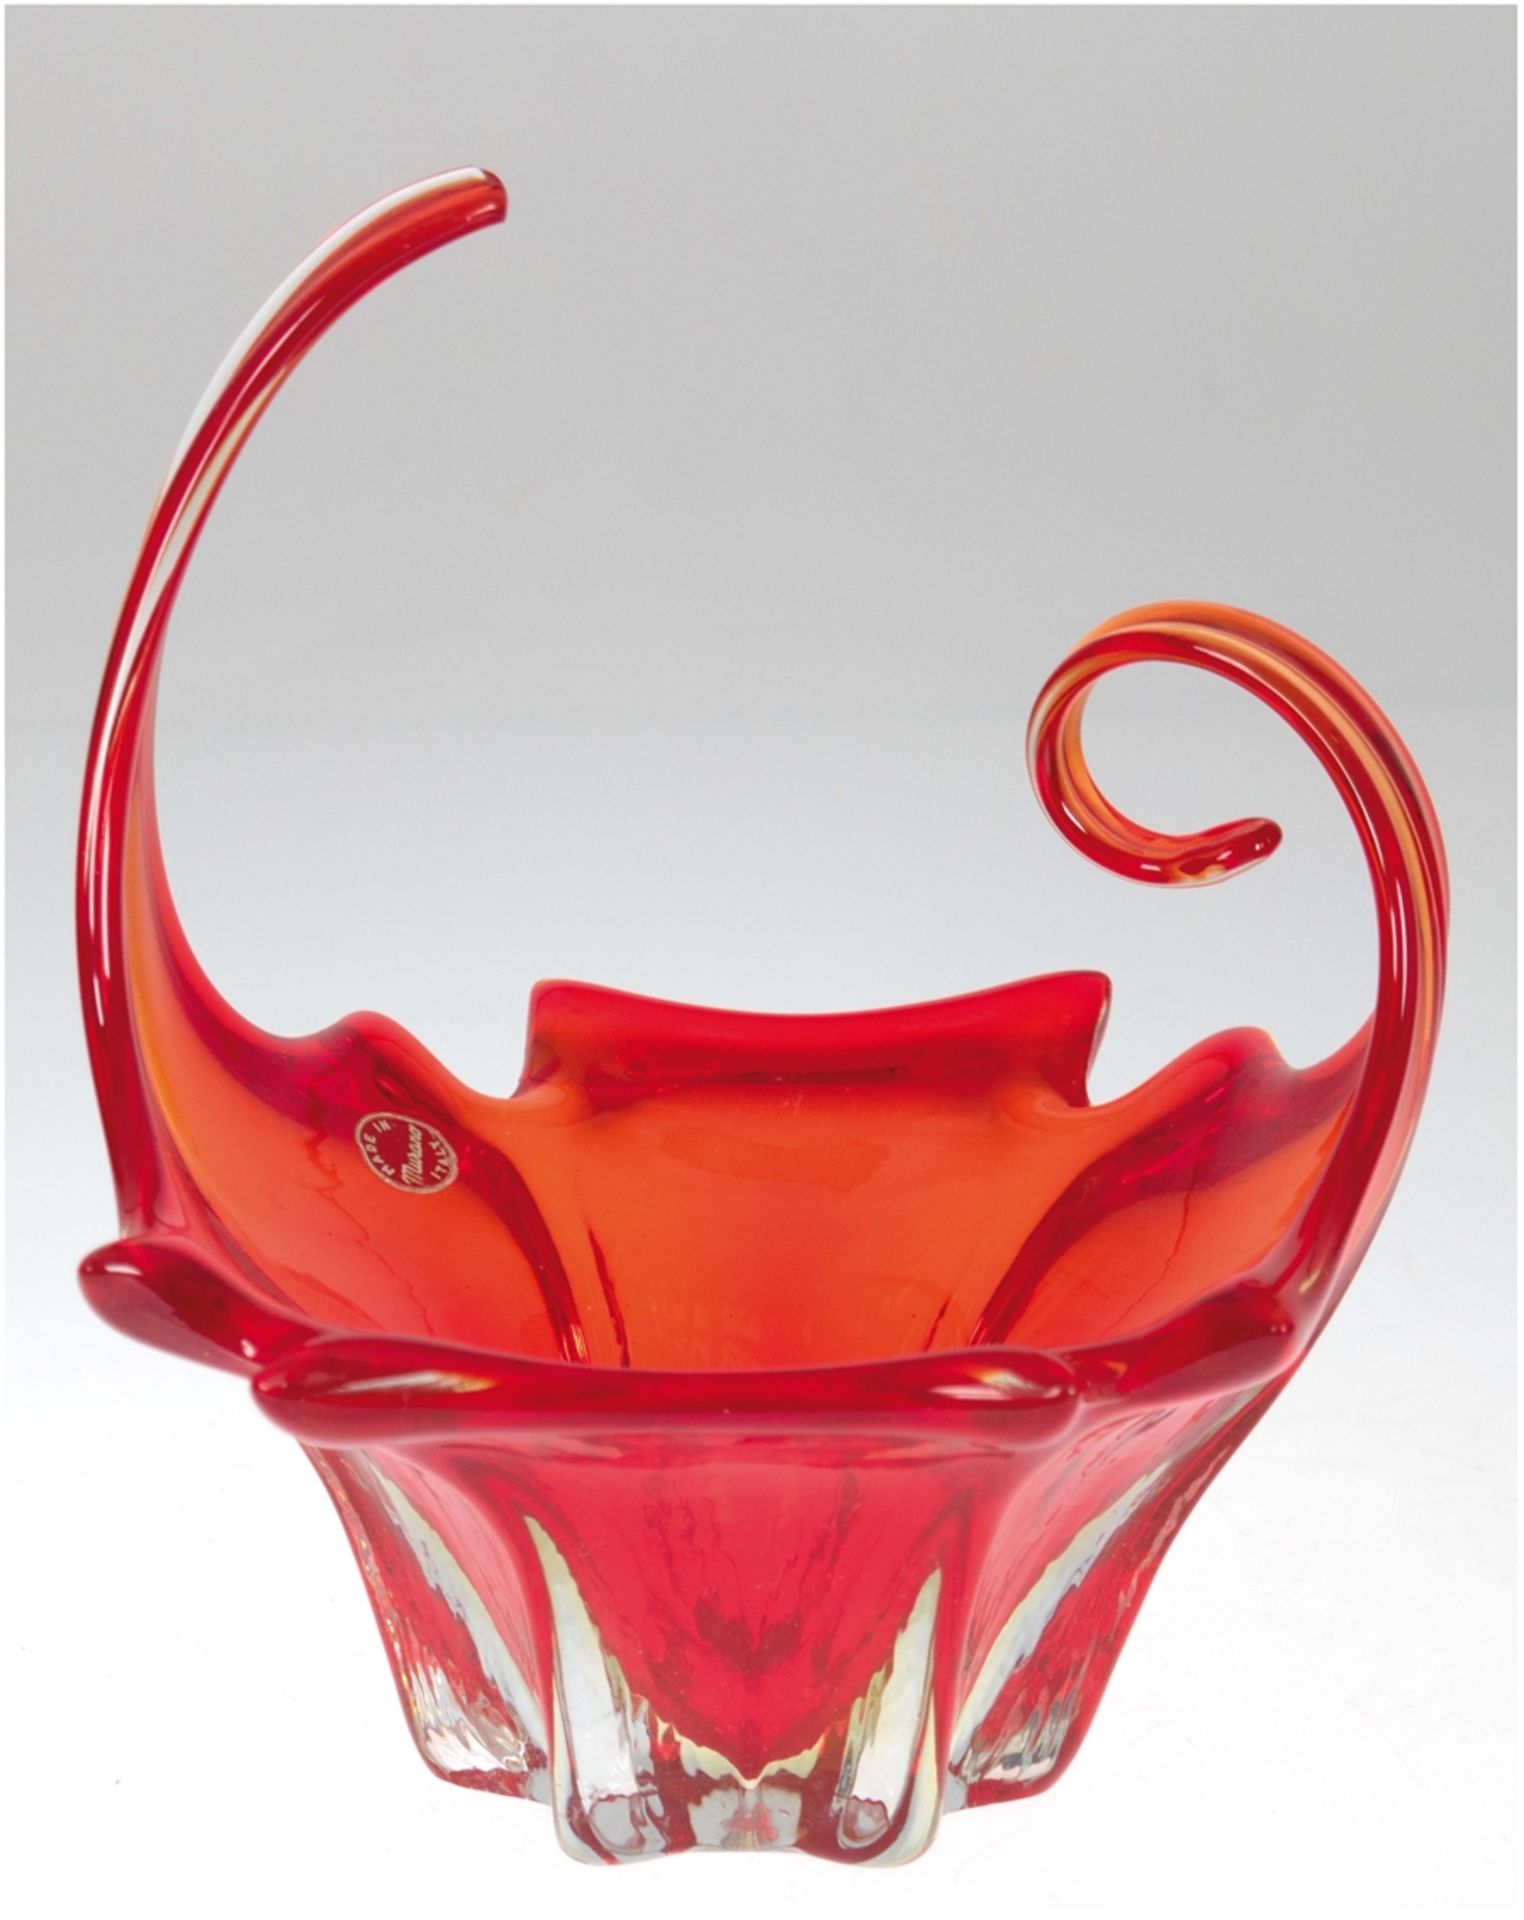 Murano-Schale, mit Etikett, farbloses Glas rot überfangen, sternförmiger Fuß in vertikal gegliedert